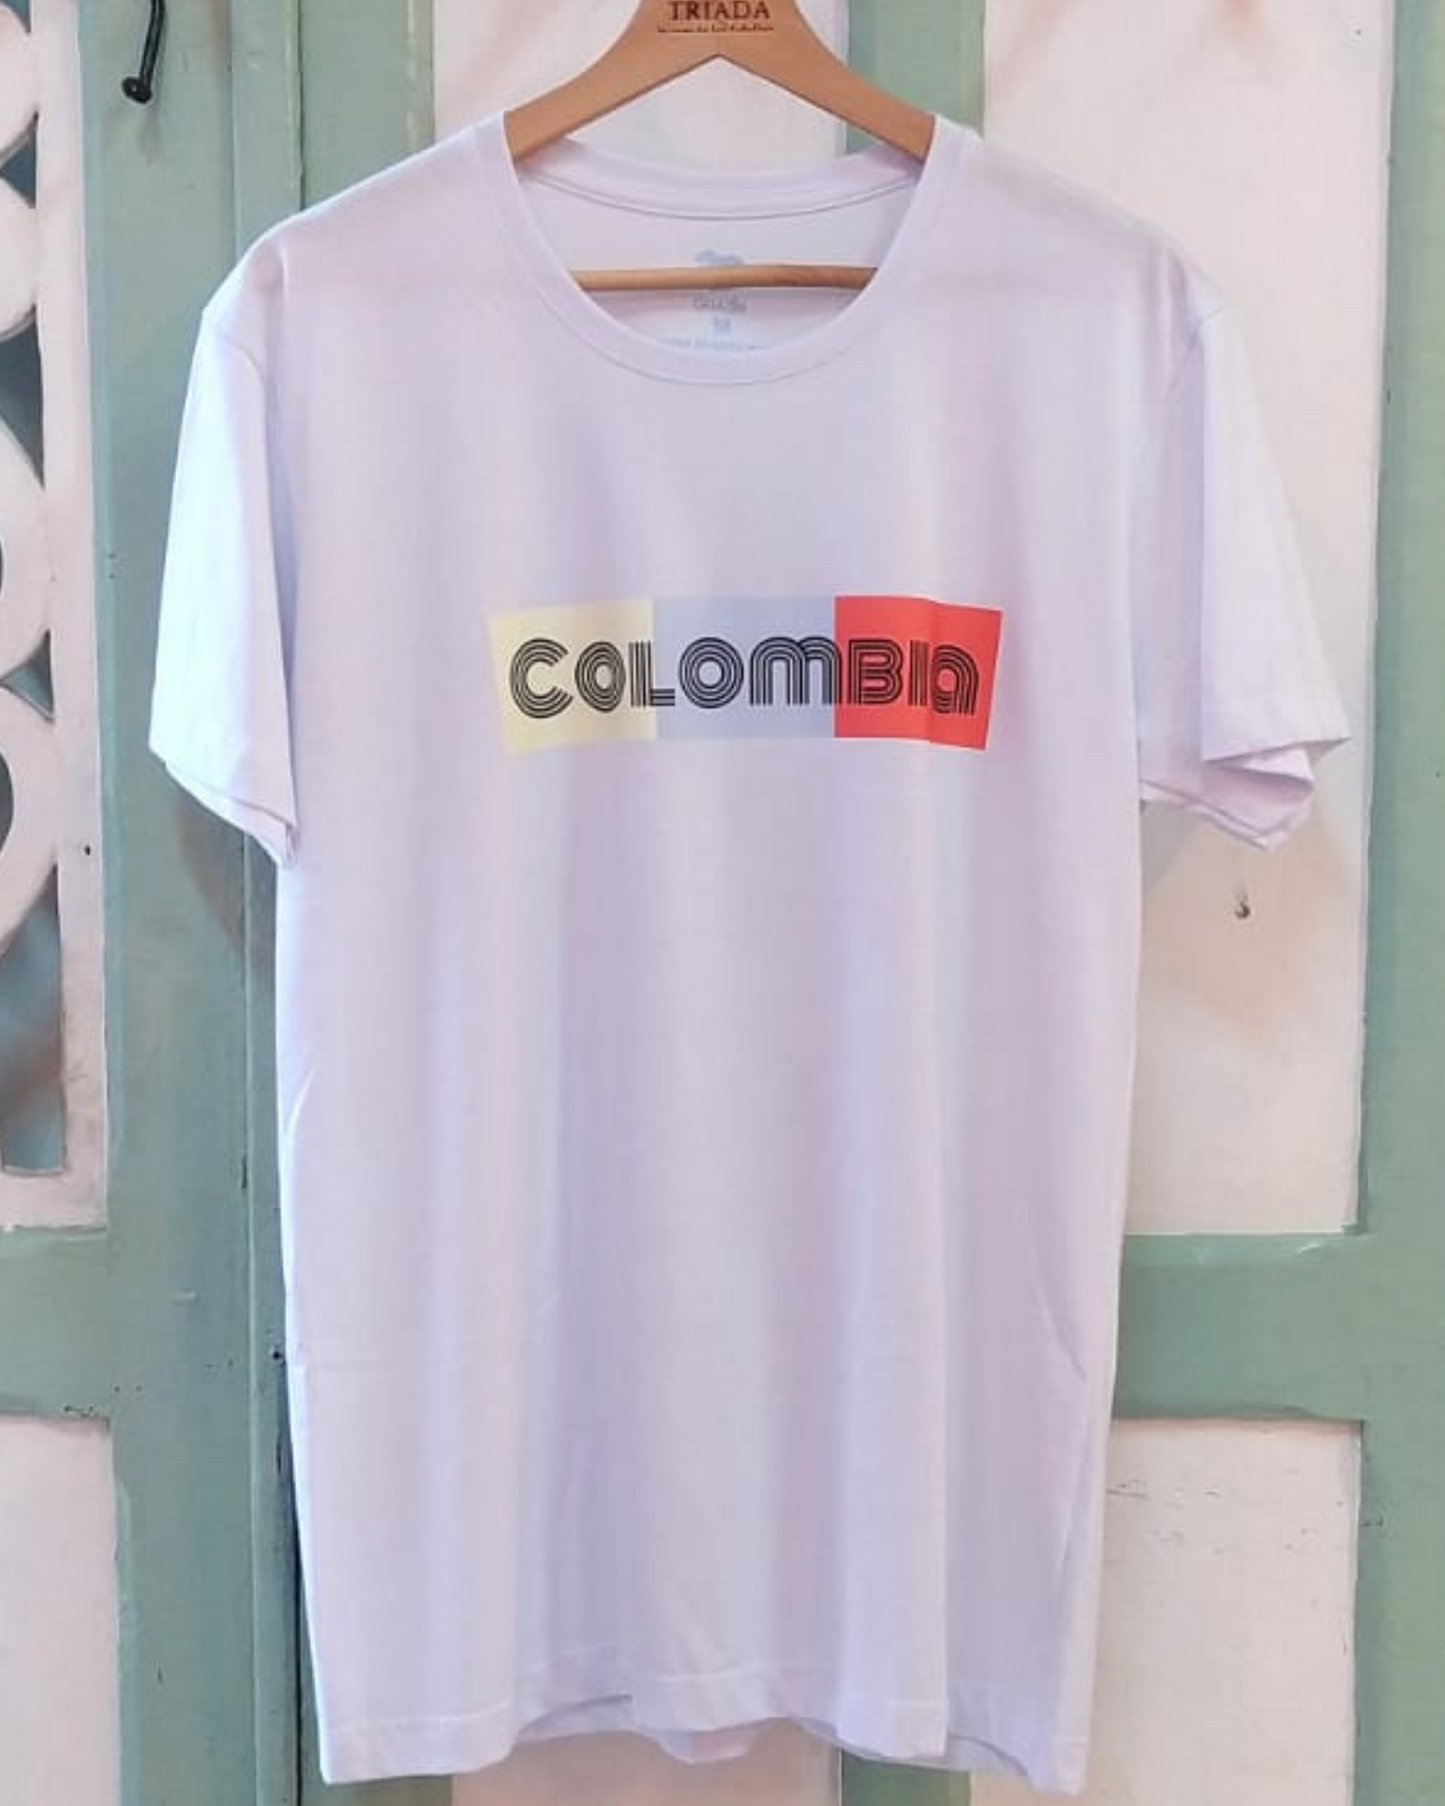 Zoom de la T-shirt Colombia de colores en fondo  blanco.